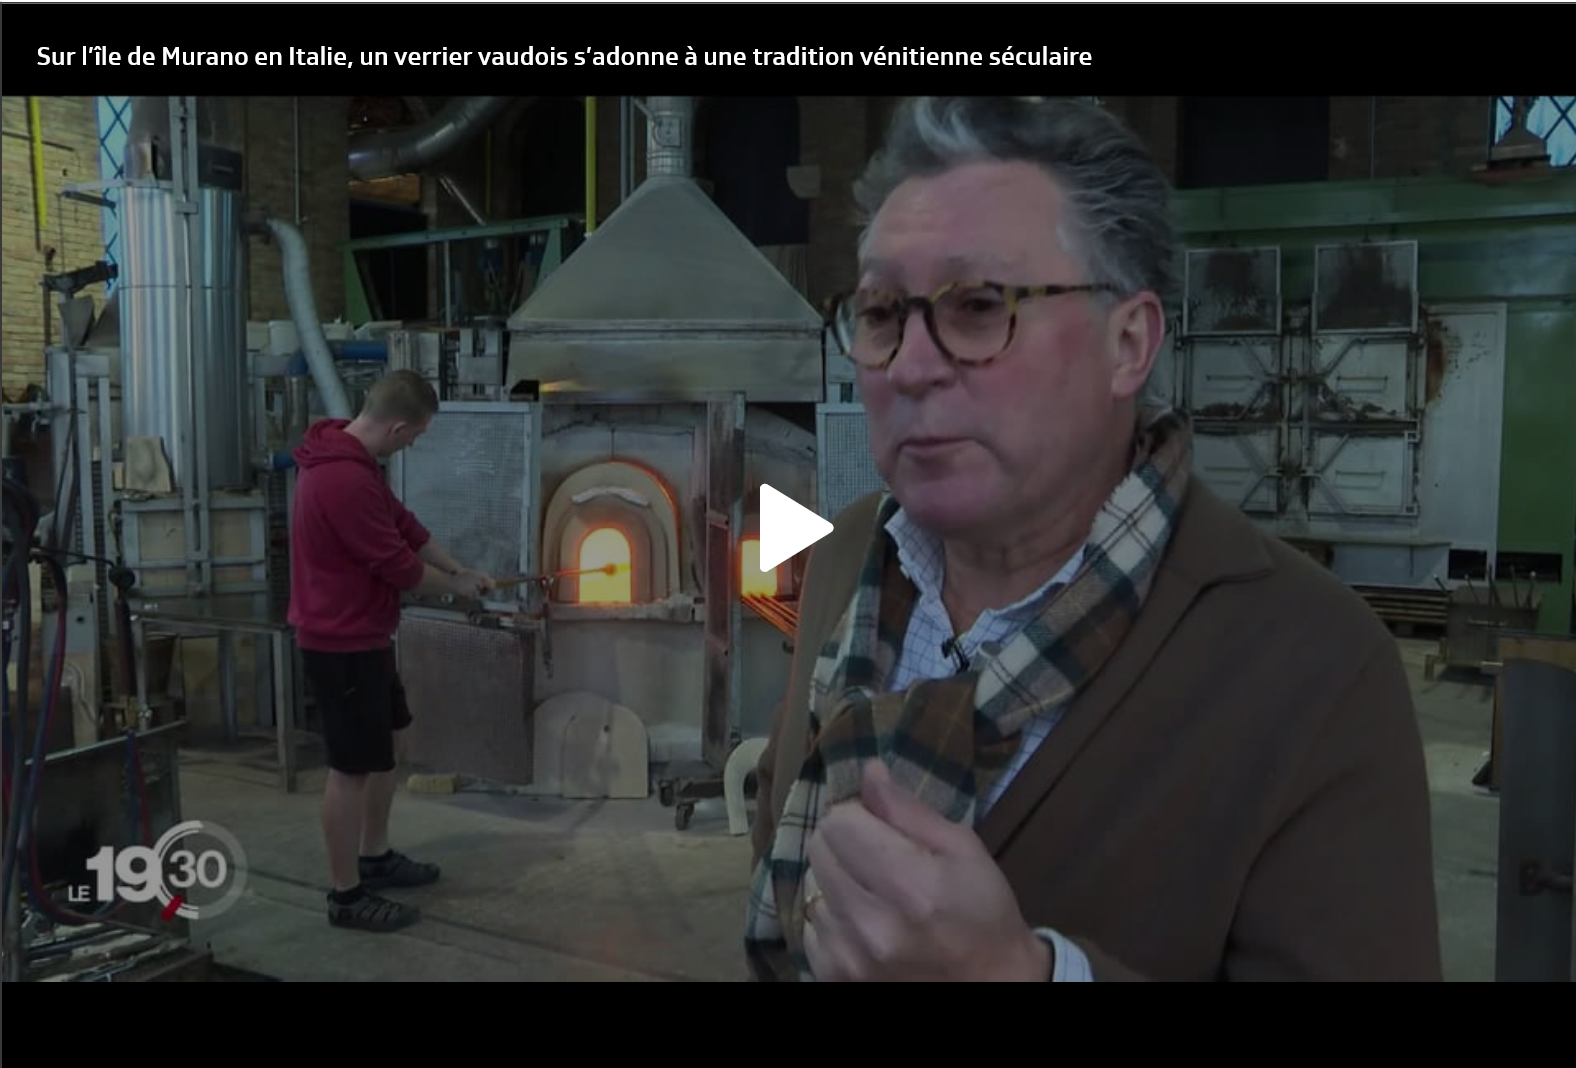 Les célèbres verreries de Murano comptent un artiste verrier de Château-d’Oex